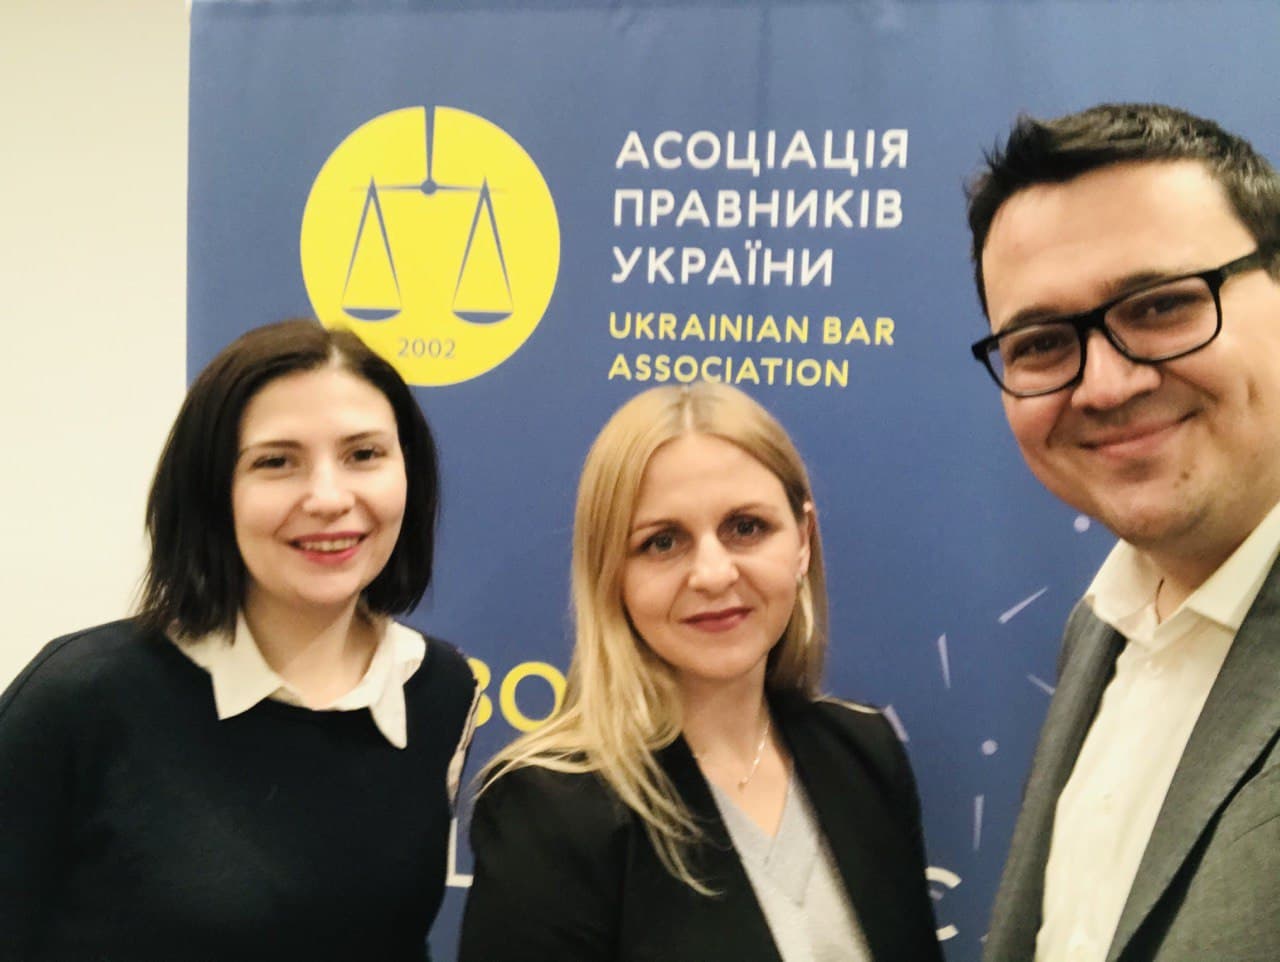 За підтримки Асоціації правників України відбулася серія освітніх заходів